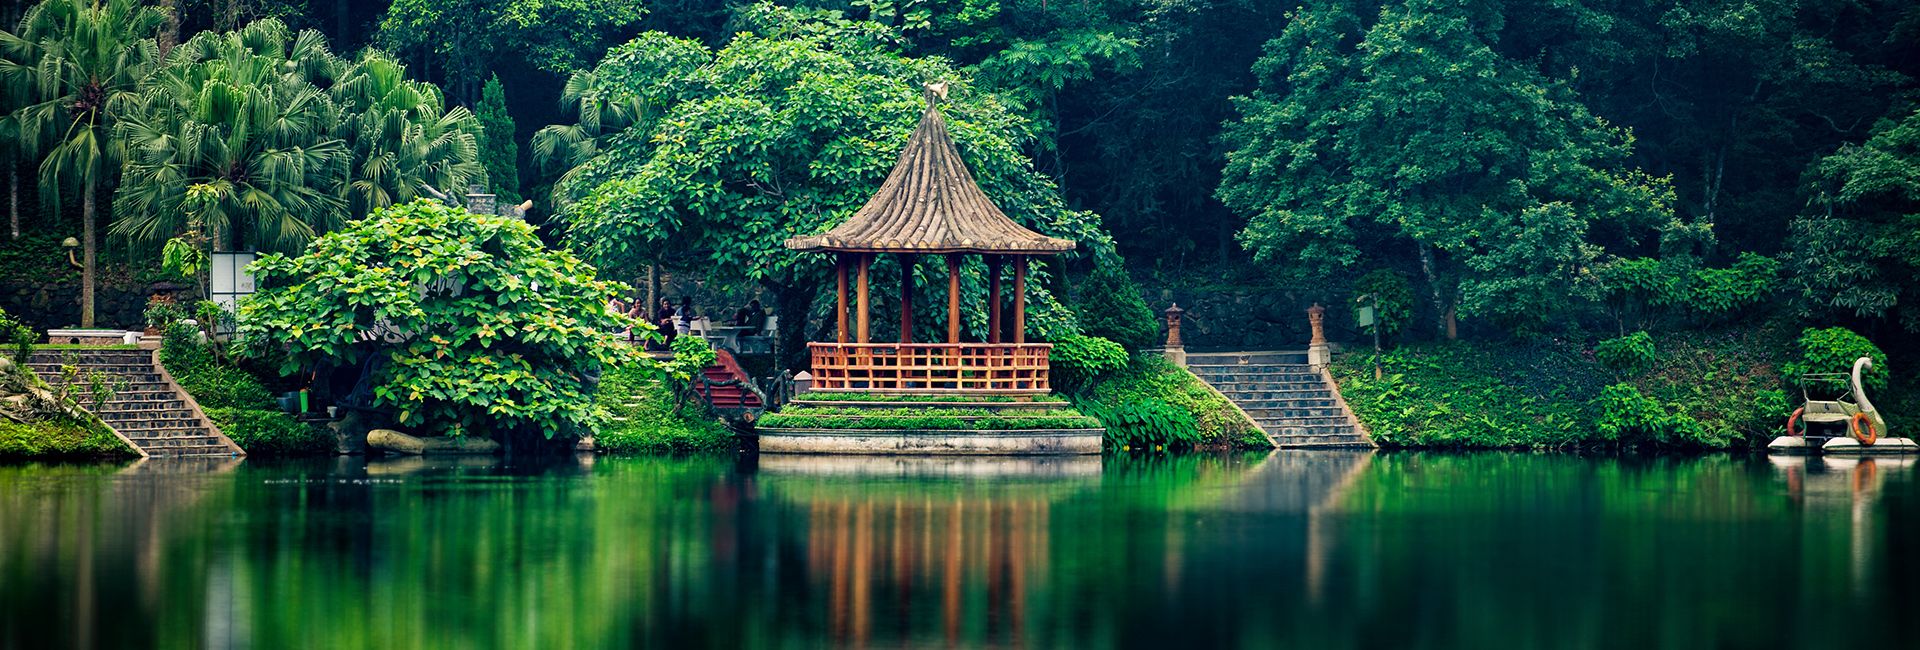 Top 20 địa điểm du lịch 2 ngày 1 đêm gần Hà Nội | Justfly.vn